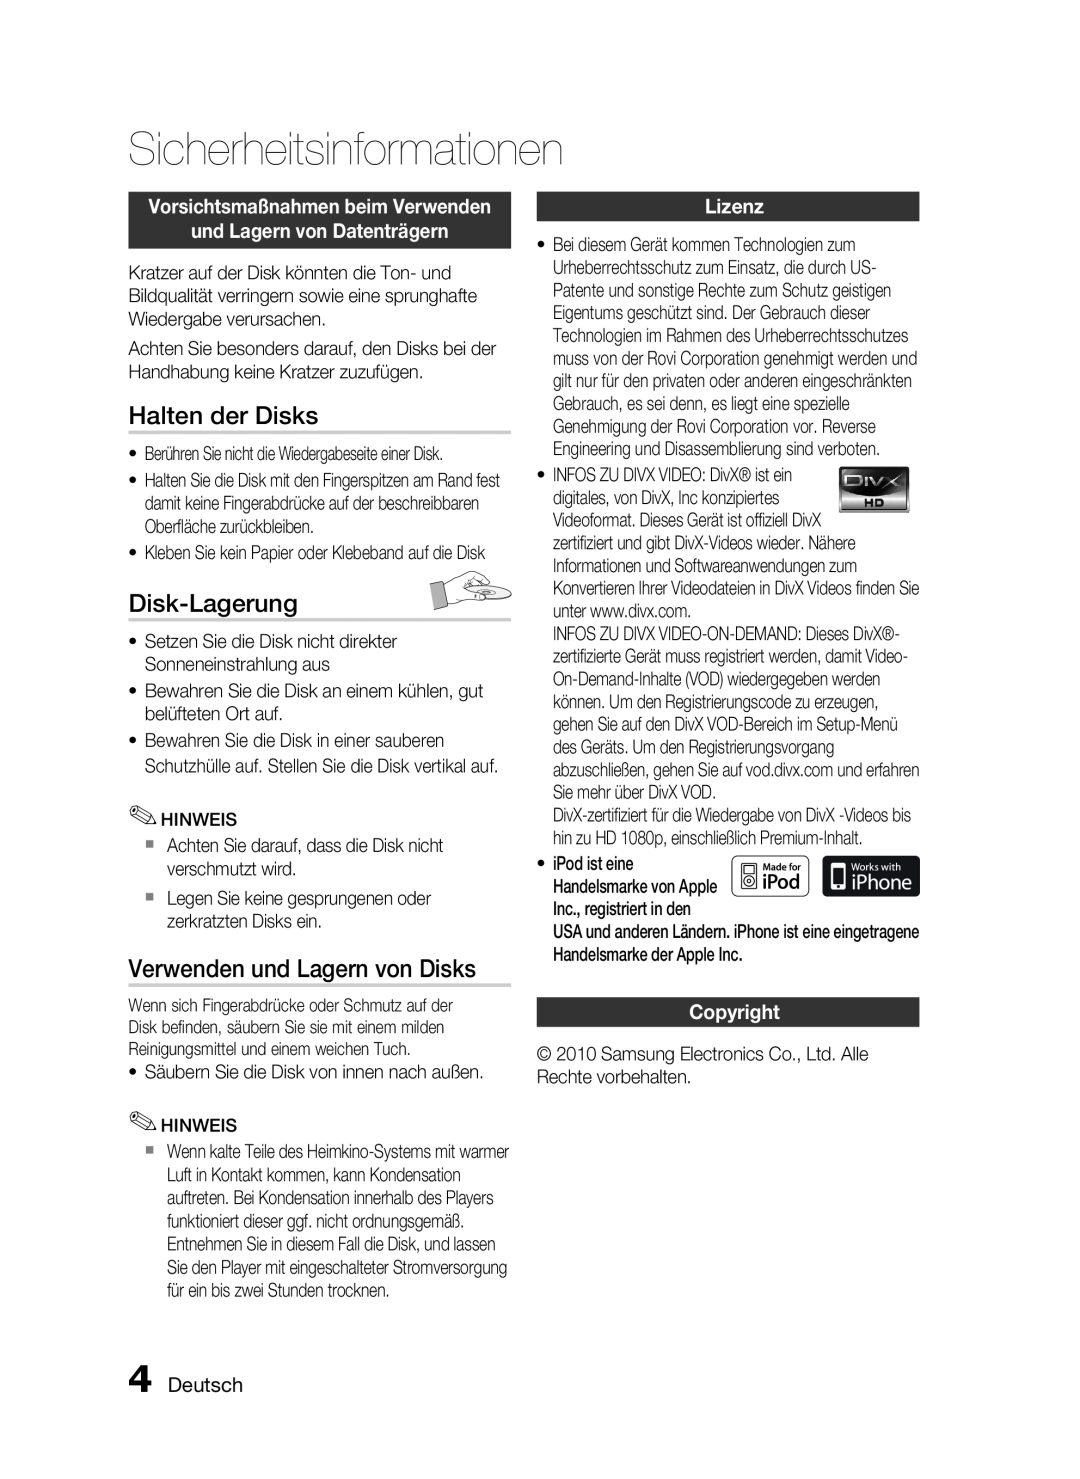 Samsung HT-C6200/XEF manual Halten der Disks, Disk-Lagerung, Verwenden und Lagern von Disks, Lizenz, Deutsch, Copyright 